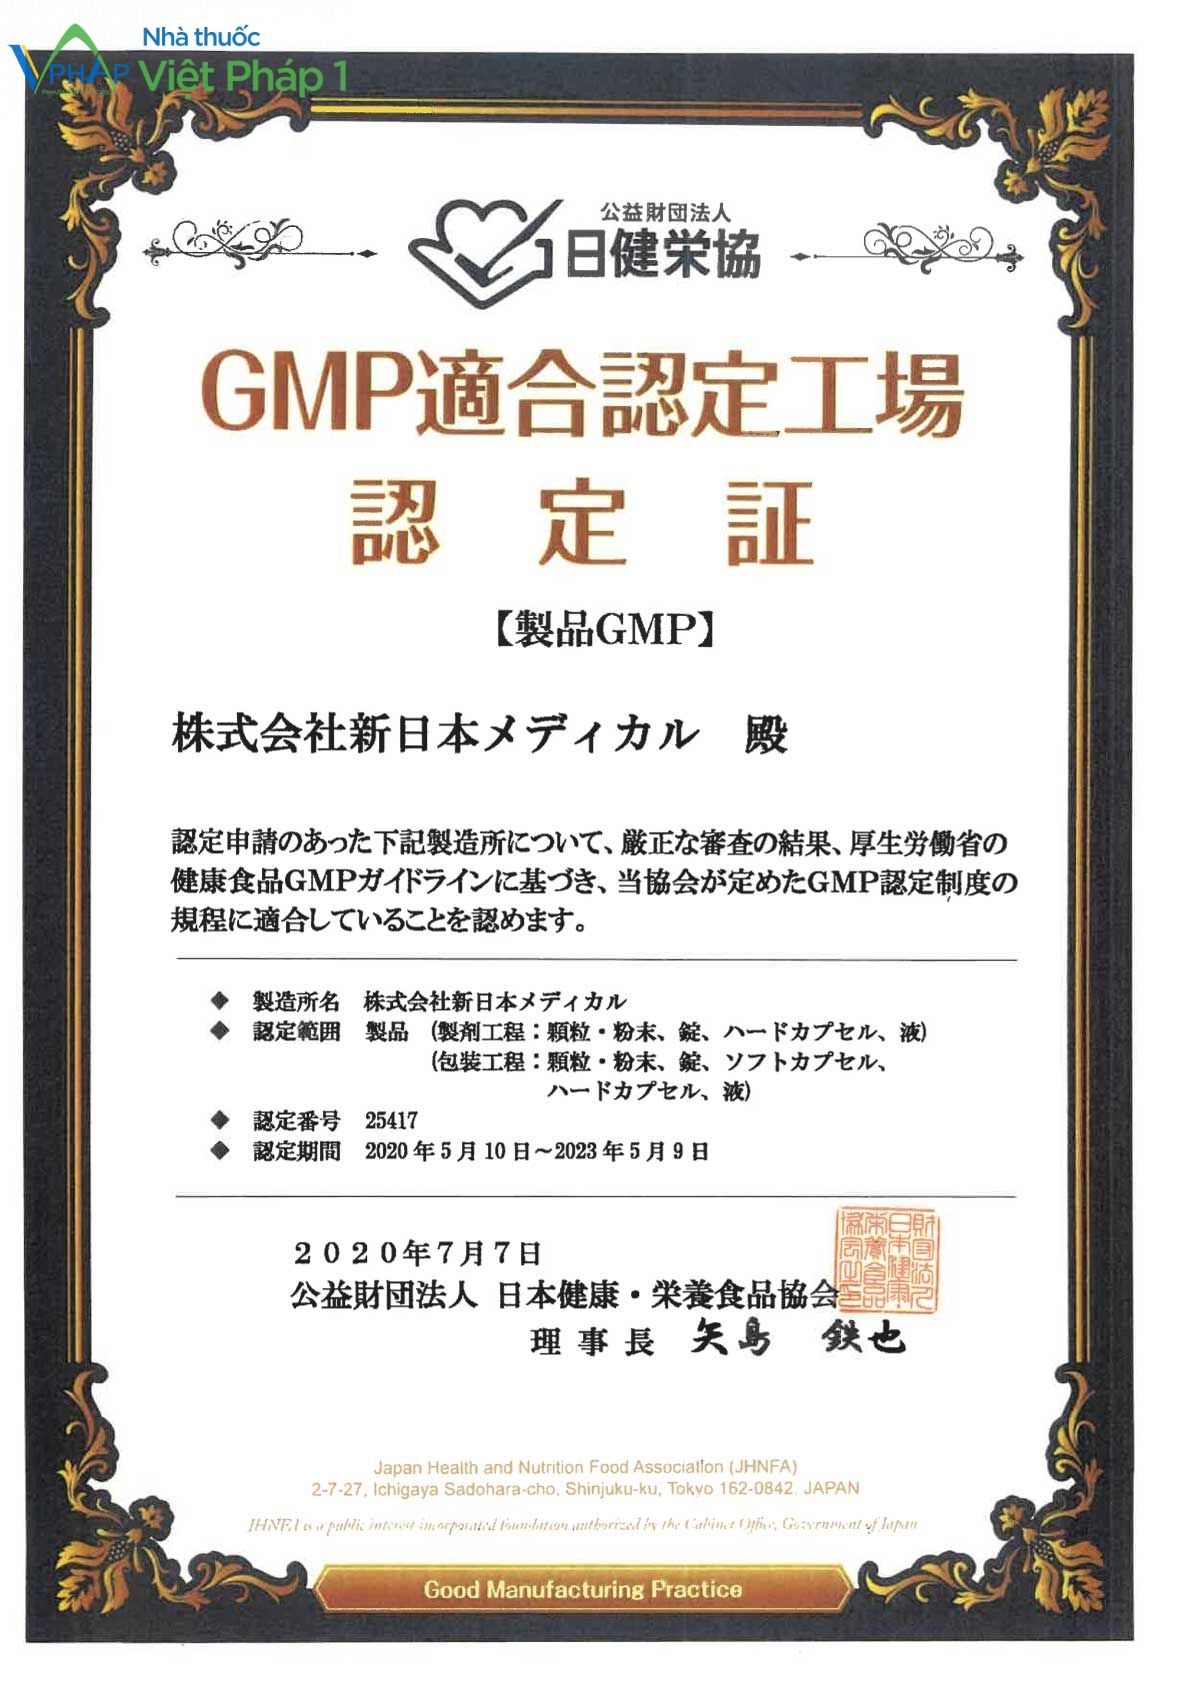 Giấy xác nhận cơ sở sản xuất đạt chuẩn GMP